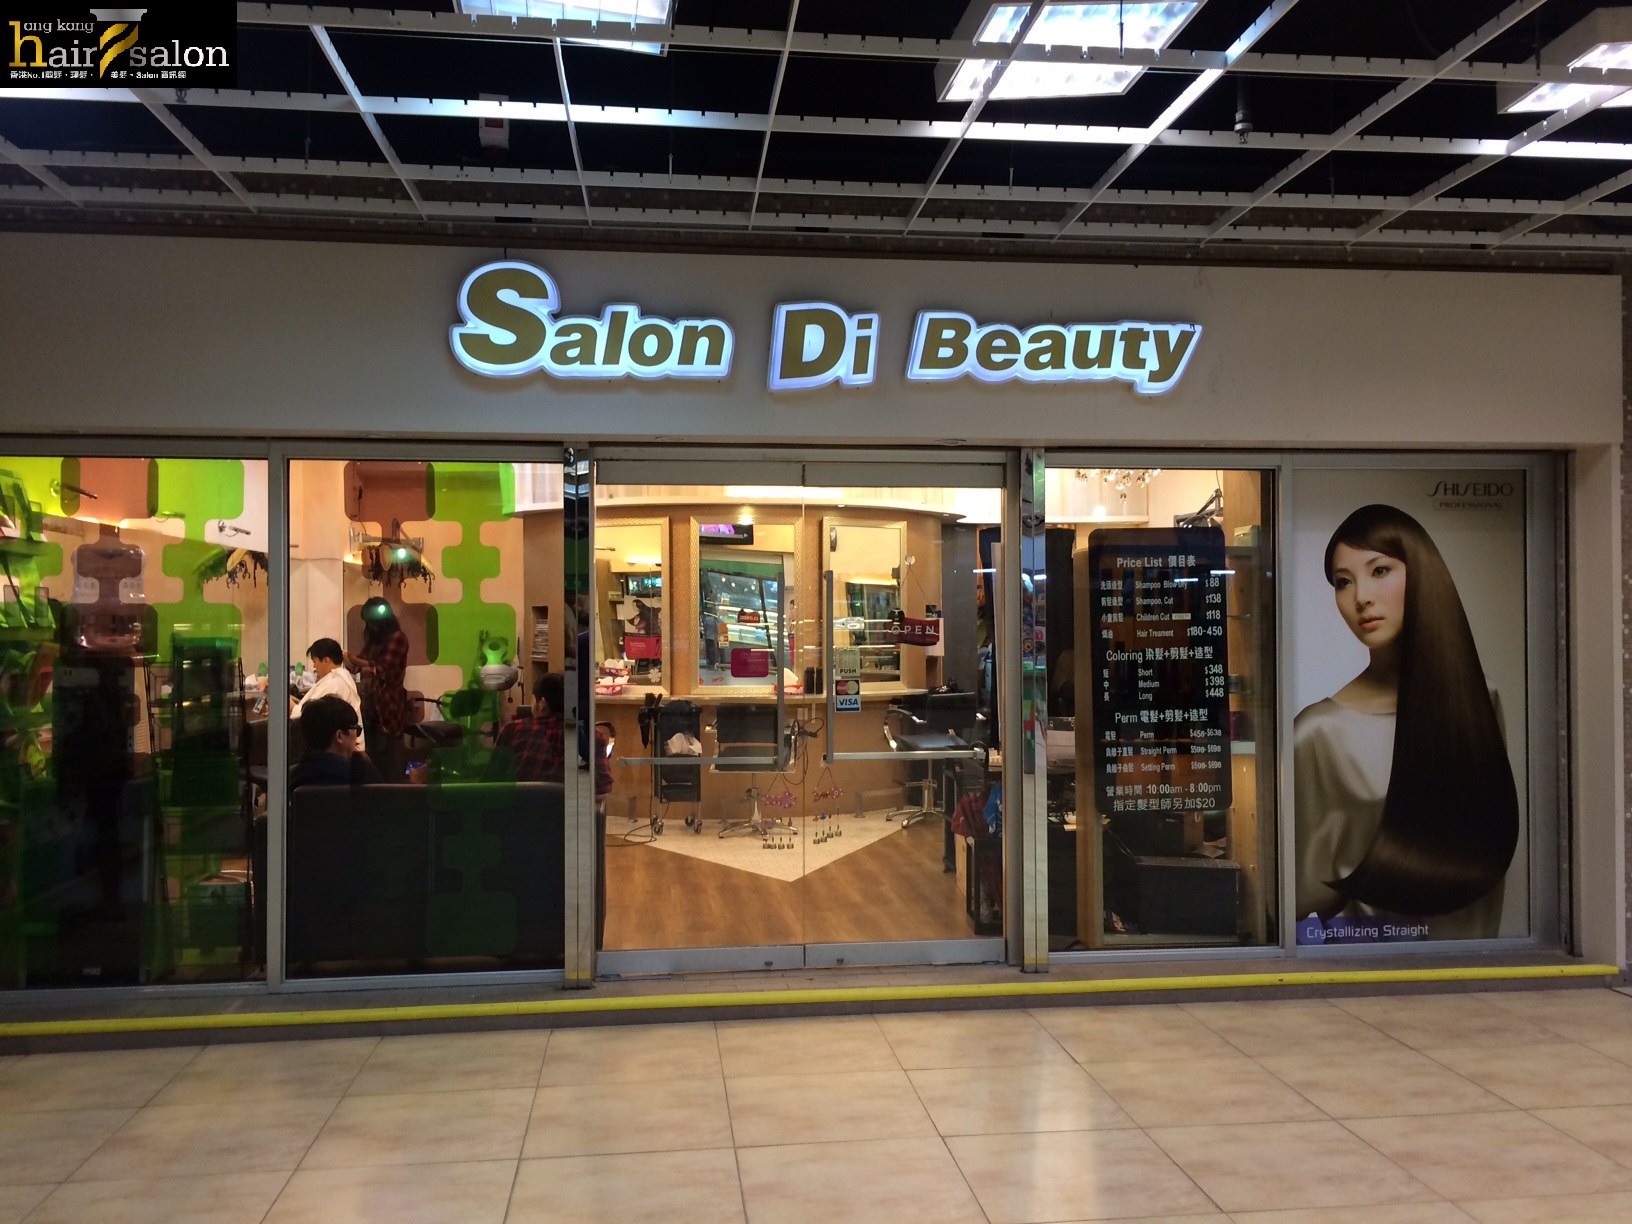 電髮/負離子: Salon Di Beauty 集美軒髮廊 (龍蟠苑商場)